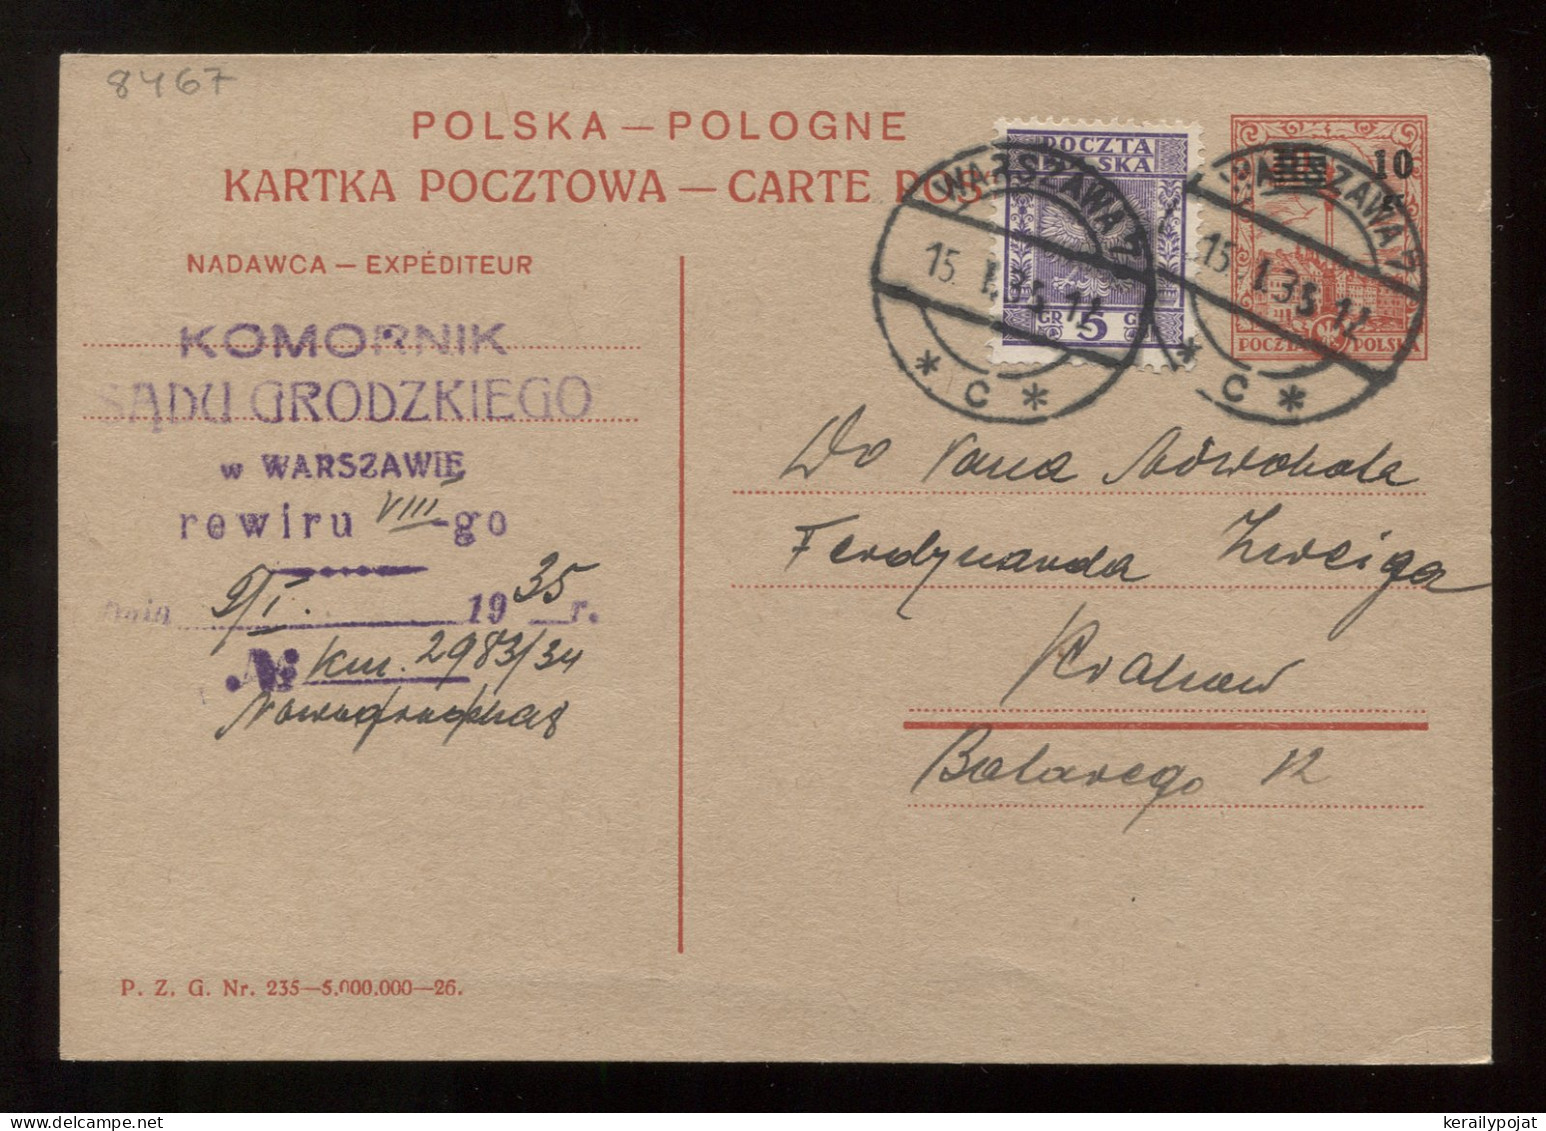 Poland 1935 Warszawa Stationery Card To Krakow__(8467) - Entiers Postaux